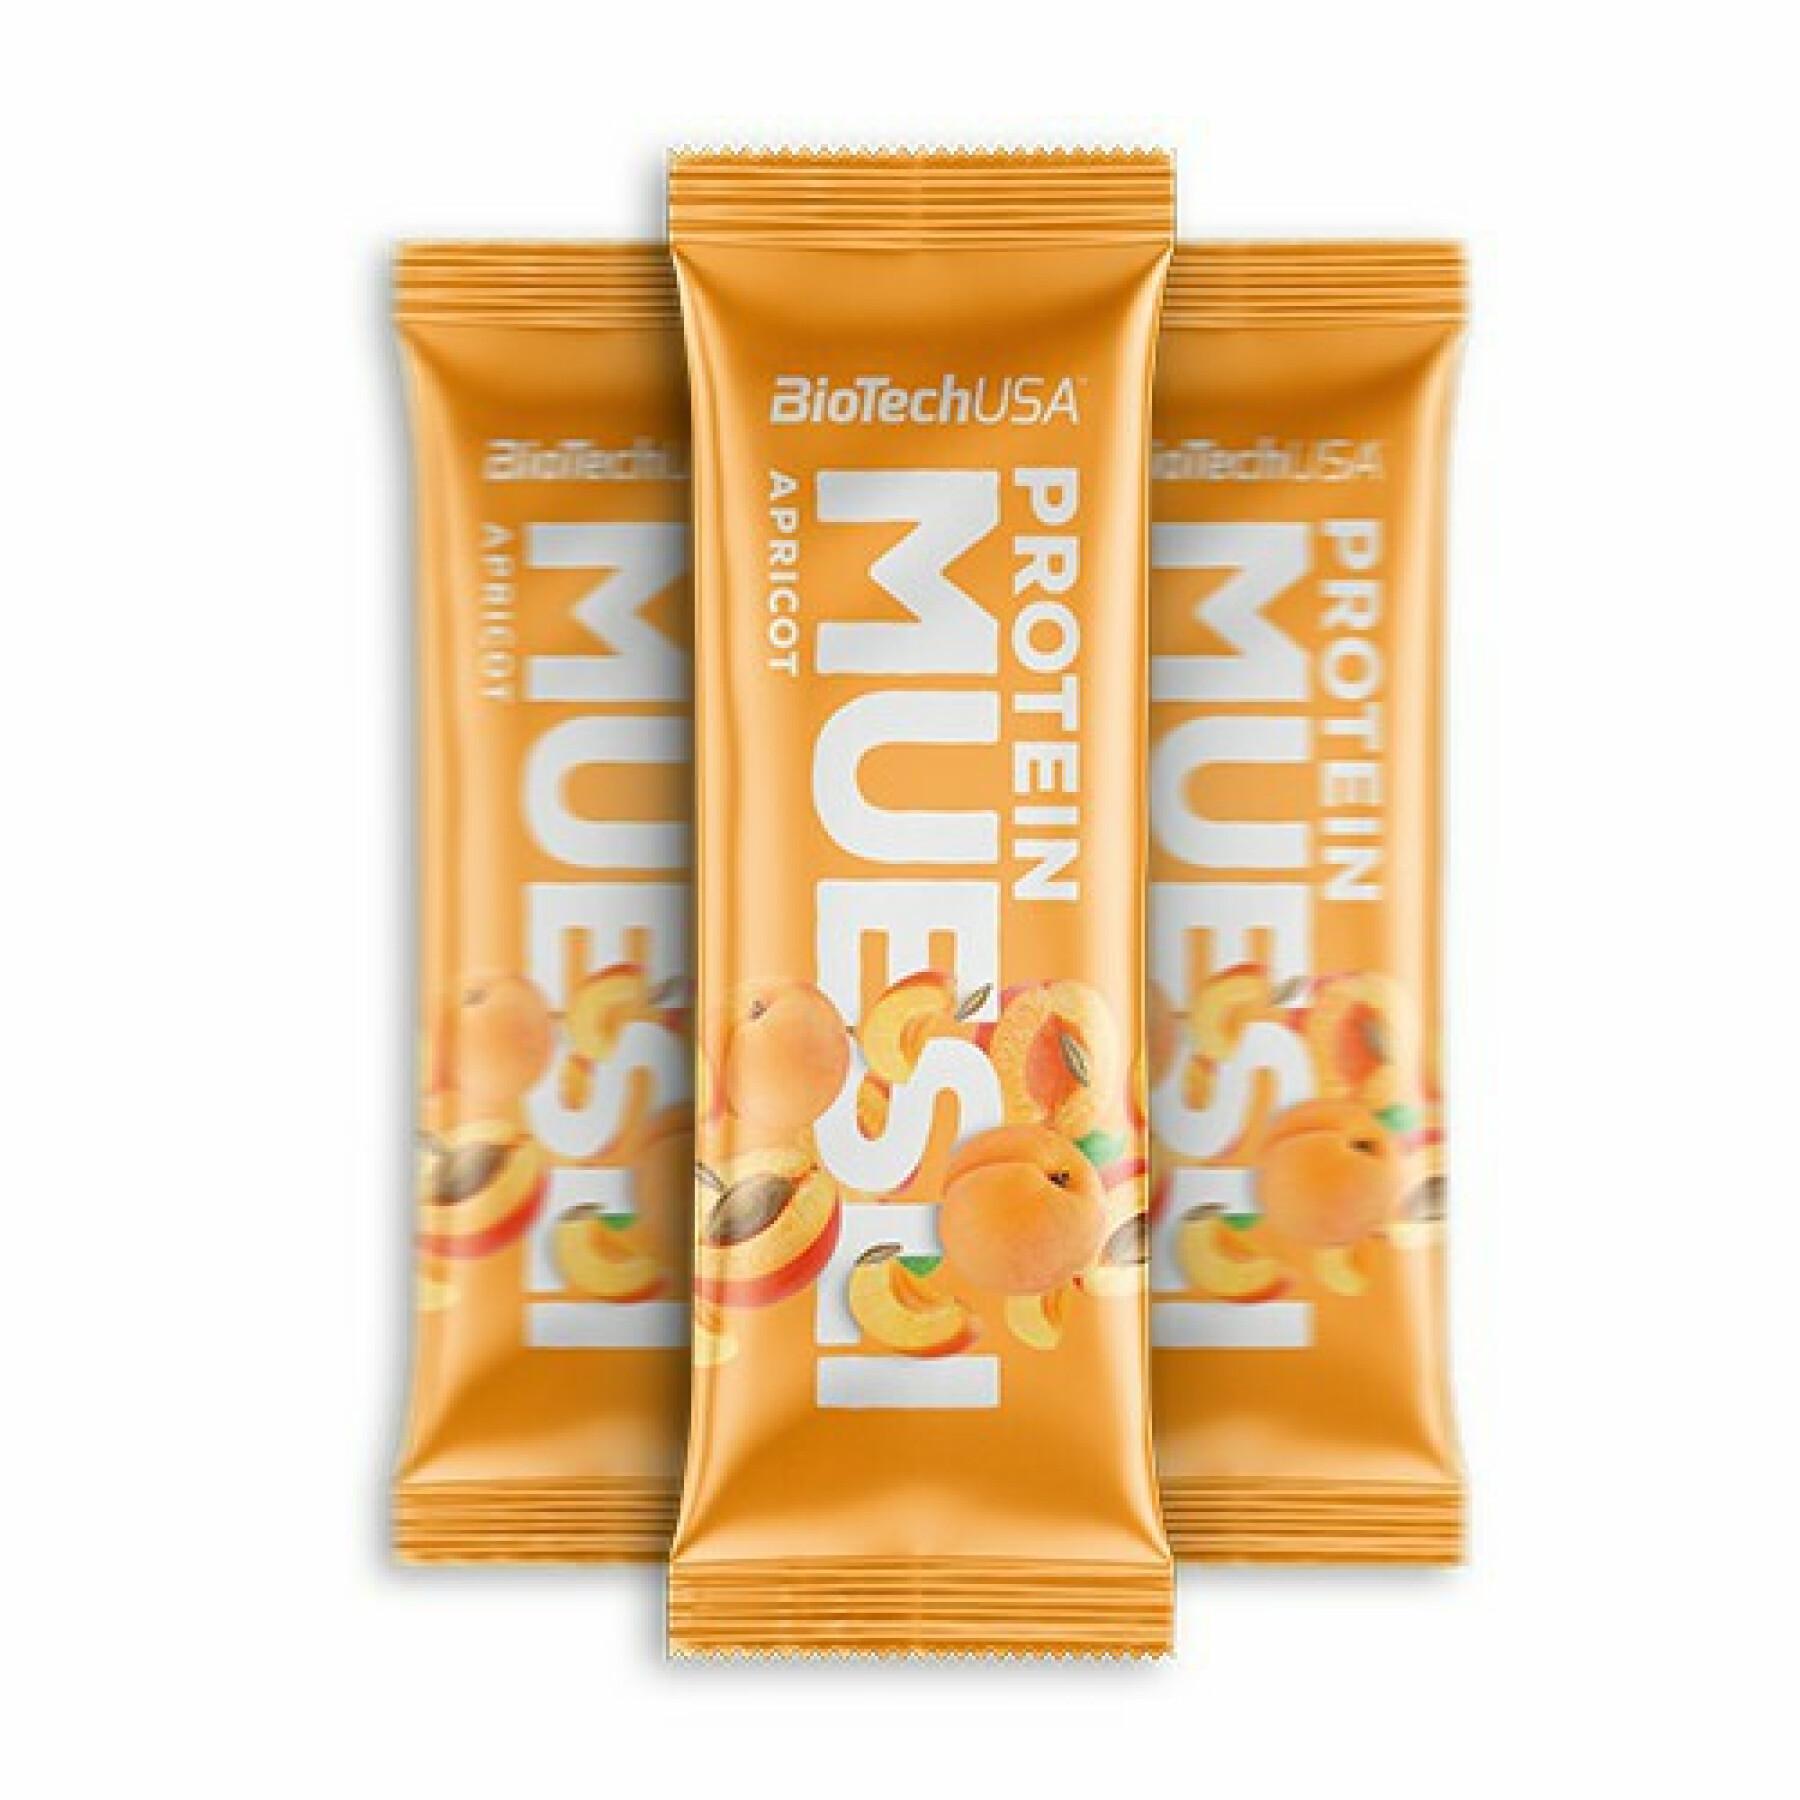 Pack de 28 cajas de snacks proteicos Biotech USA muesli - Abricot